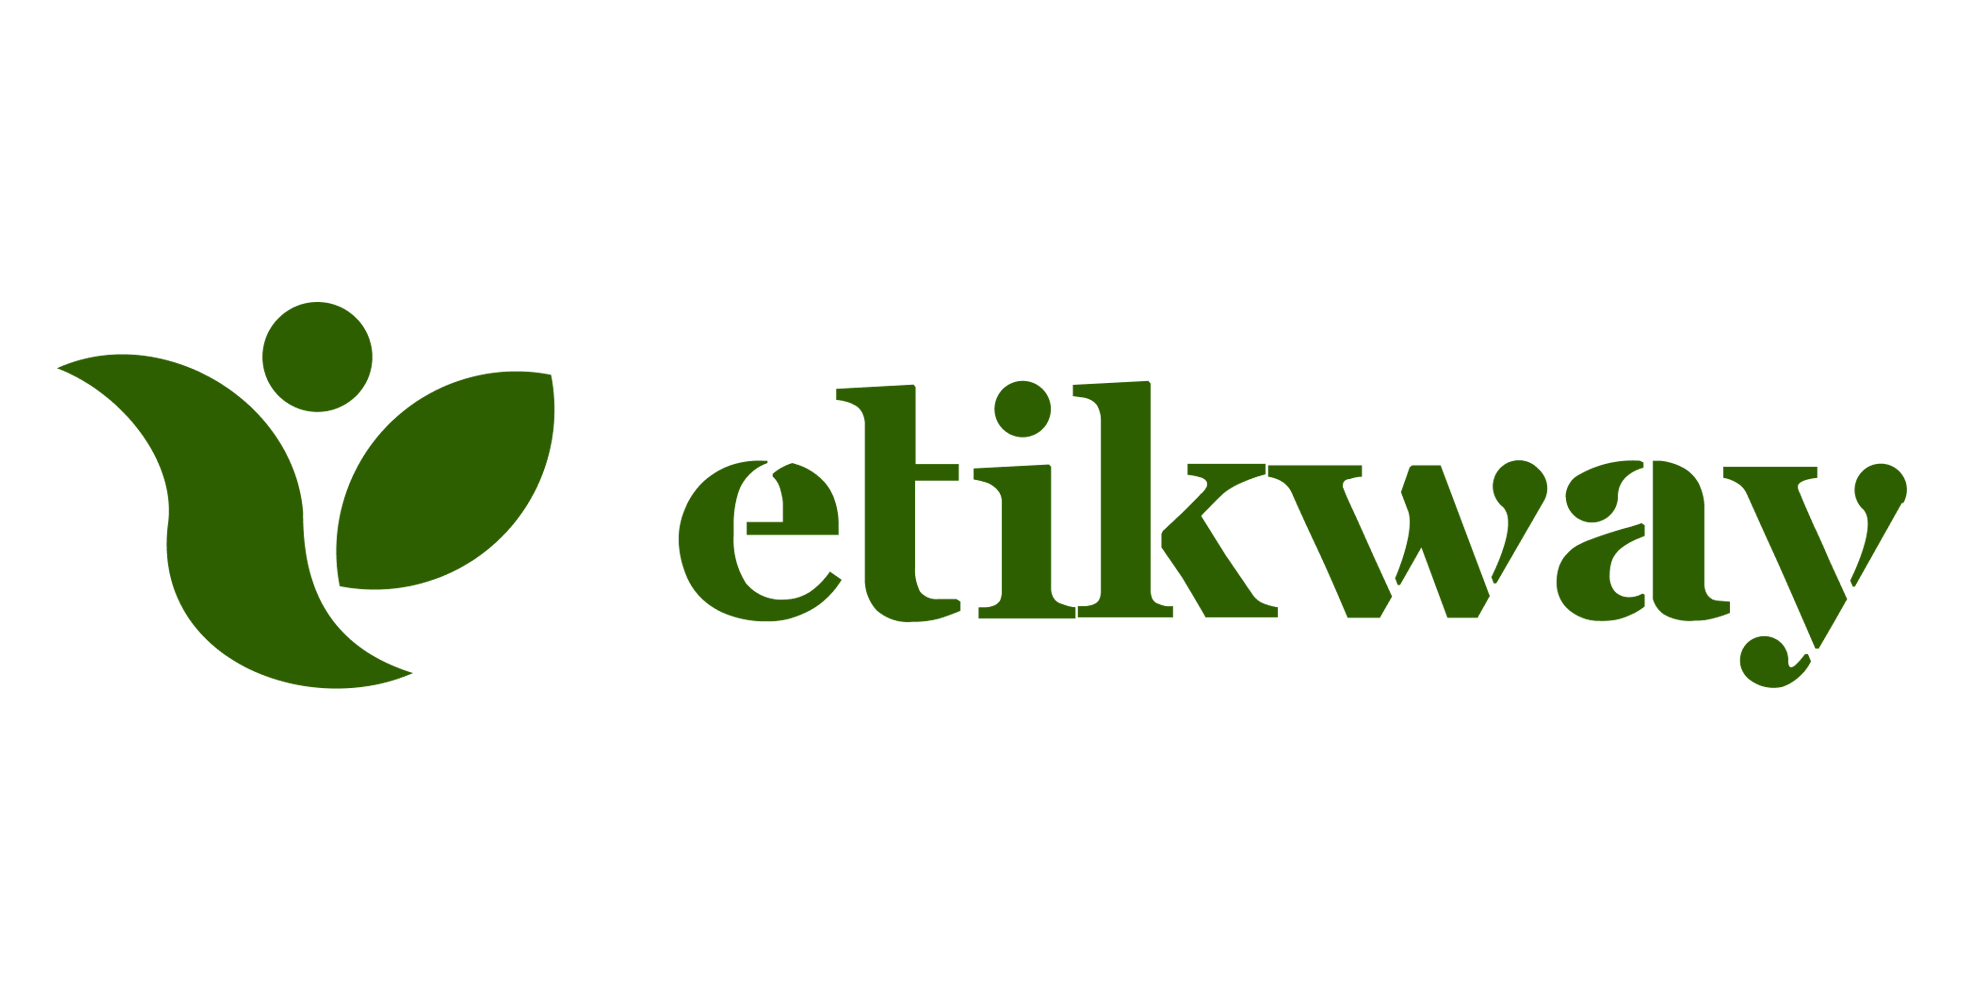 Etikway: a sustentabilidade é nesta direção